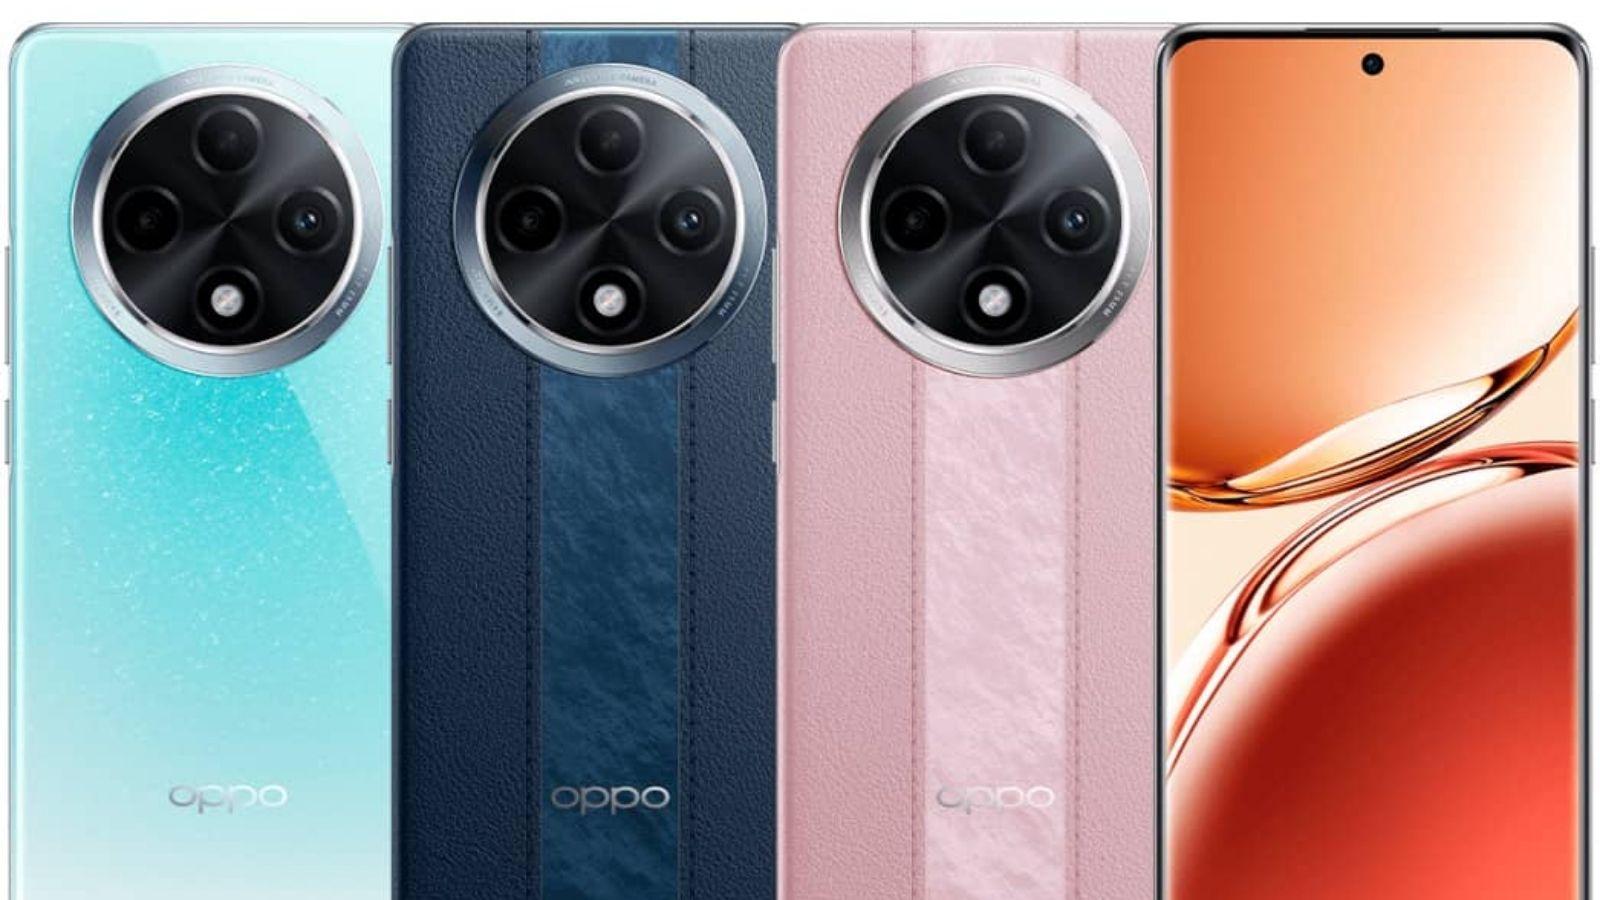 Oppo A3 Pro cihazı ile sunduğu orta segment telefon seçeneklerine bir yenisini daha hanesine  eklemeyi başardı.